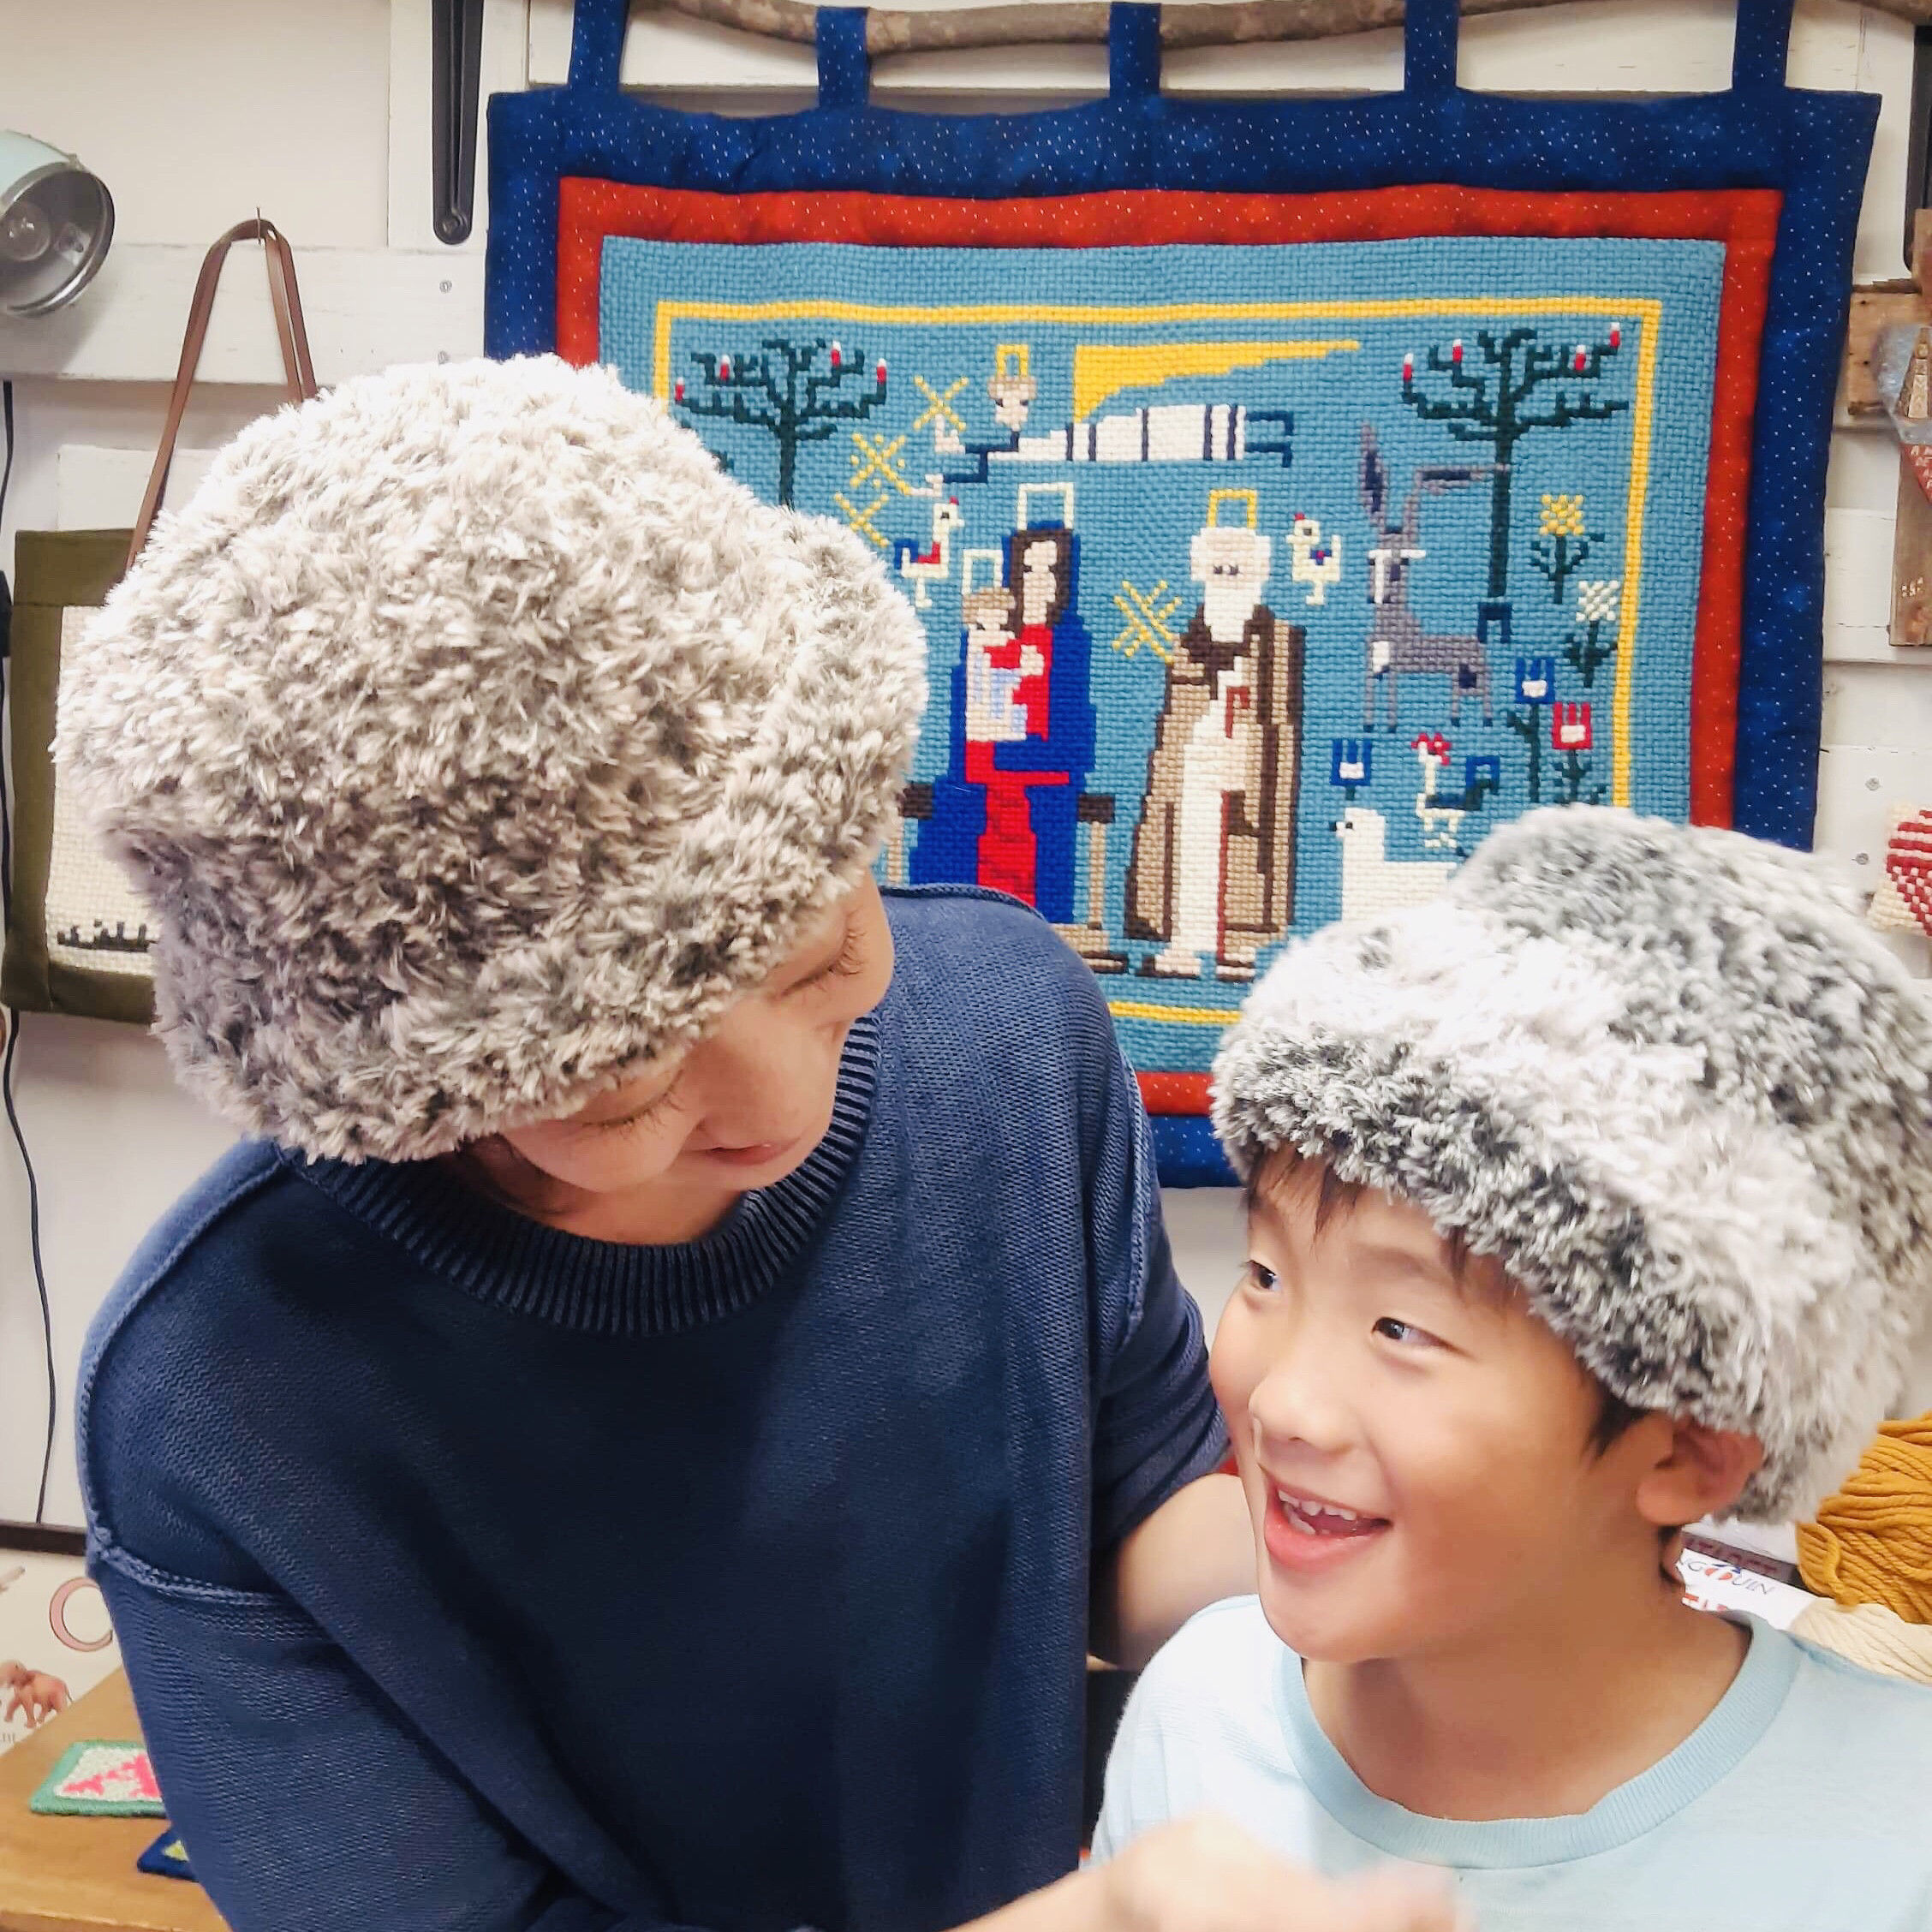 ファーヤーンで編む冬帽子 - メルカジーニョmercadinho